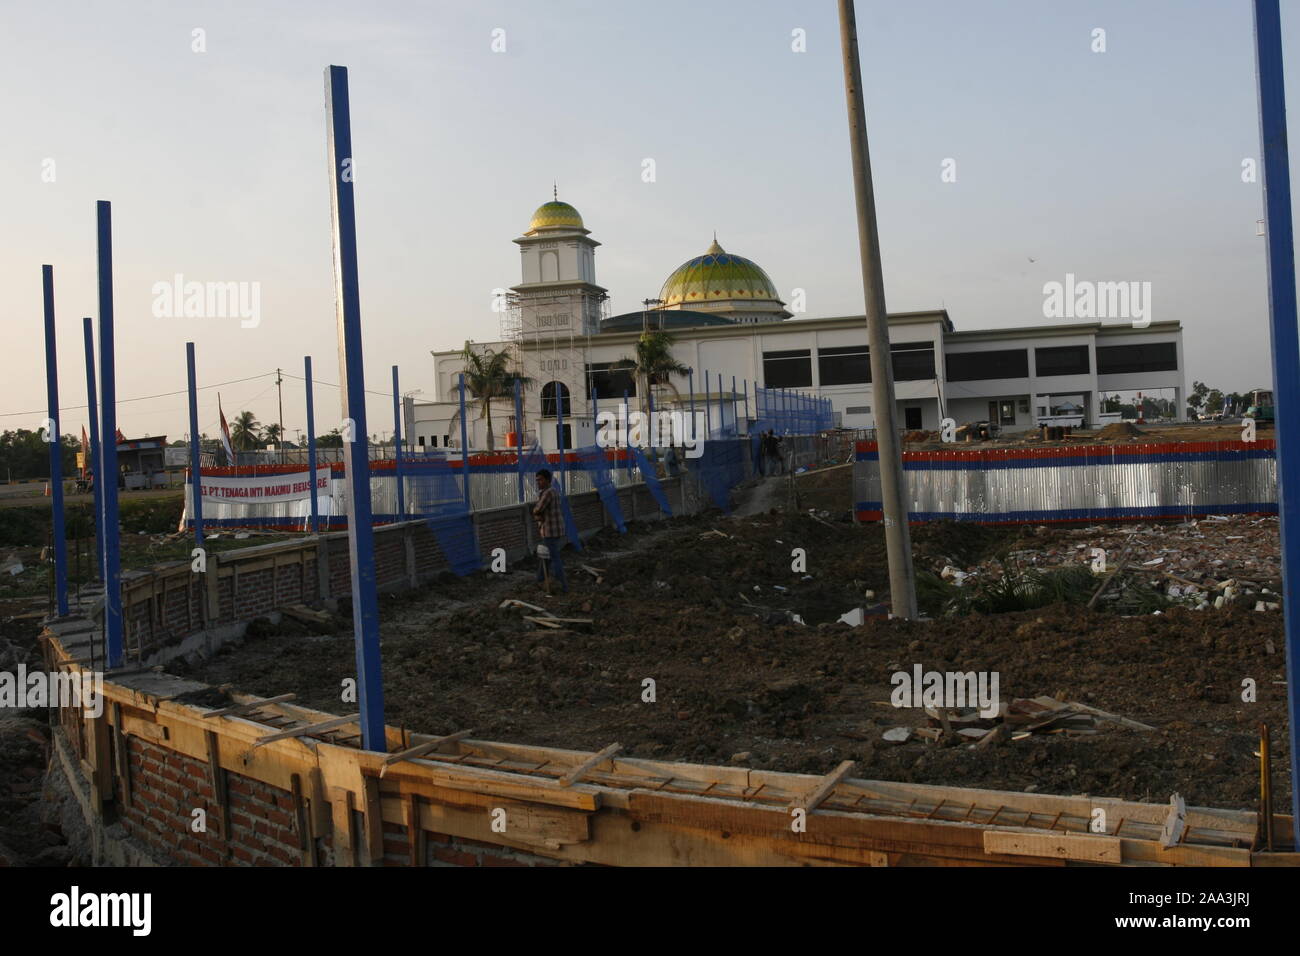 Banda Aceh, Aceh, Indonesien. 31. Oktober 2008. Entwicklung des Flughafens Banda Aceh auf der Insel Sumatra, Indonesien, nach einer 3-jährigen Tsunami-Tragödie. Stockfoto